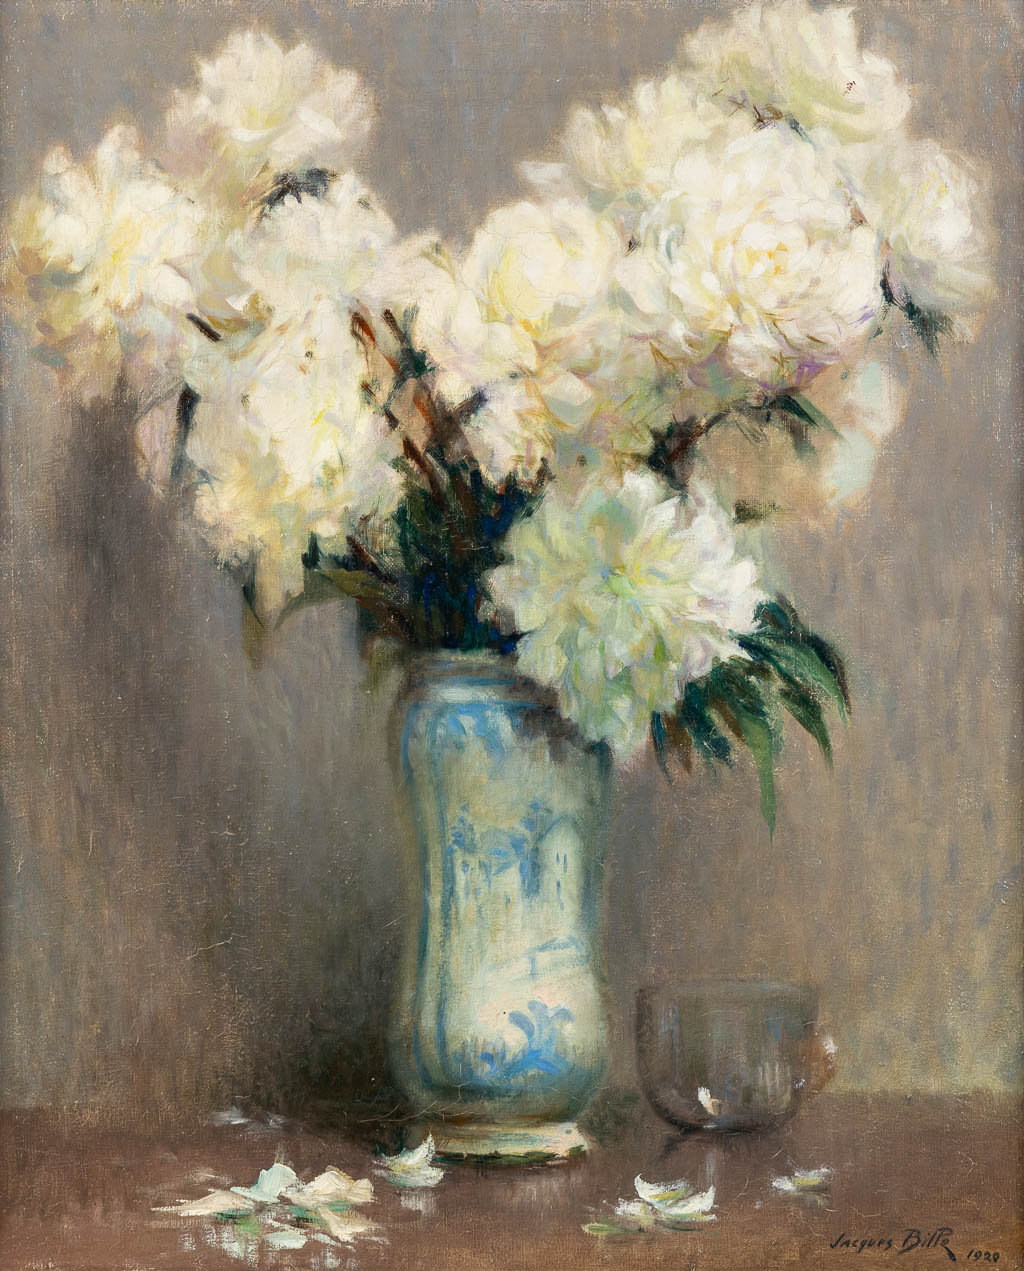 Jacques BILLE (1880-c.1943) 'Bloemen' 1920. (W:50 x H:61 cm)